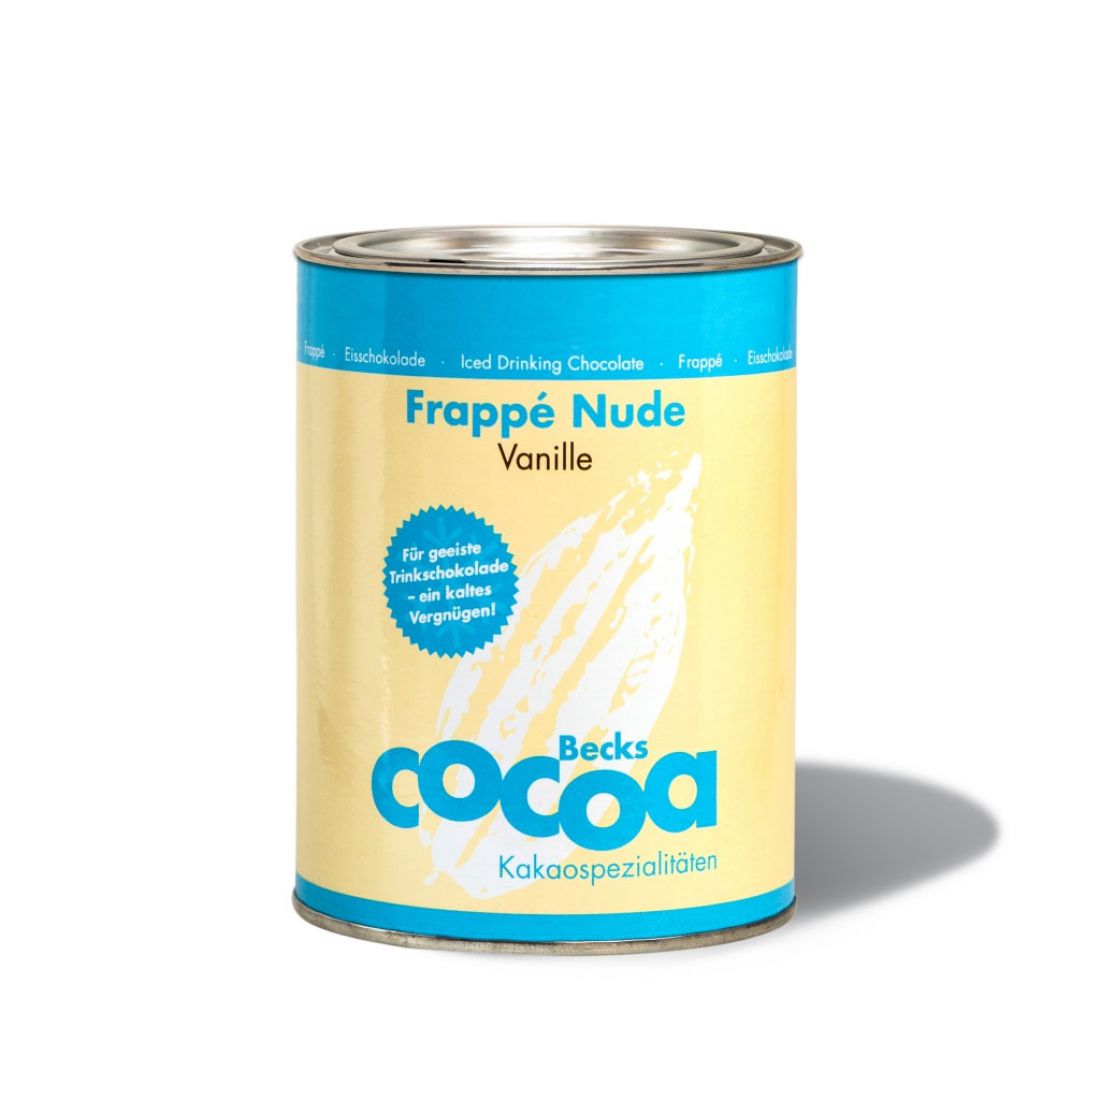 Šaltas kakavos gėrimas „Nude Frappe“, 250g